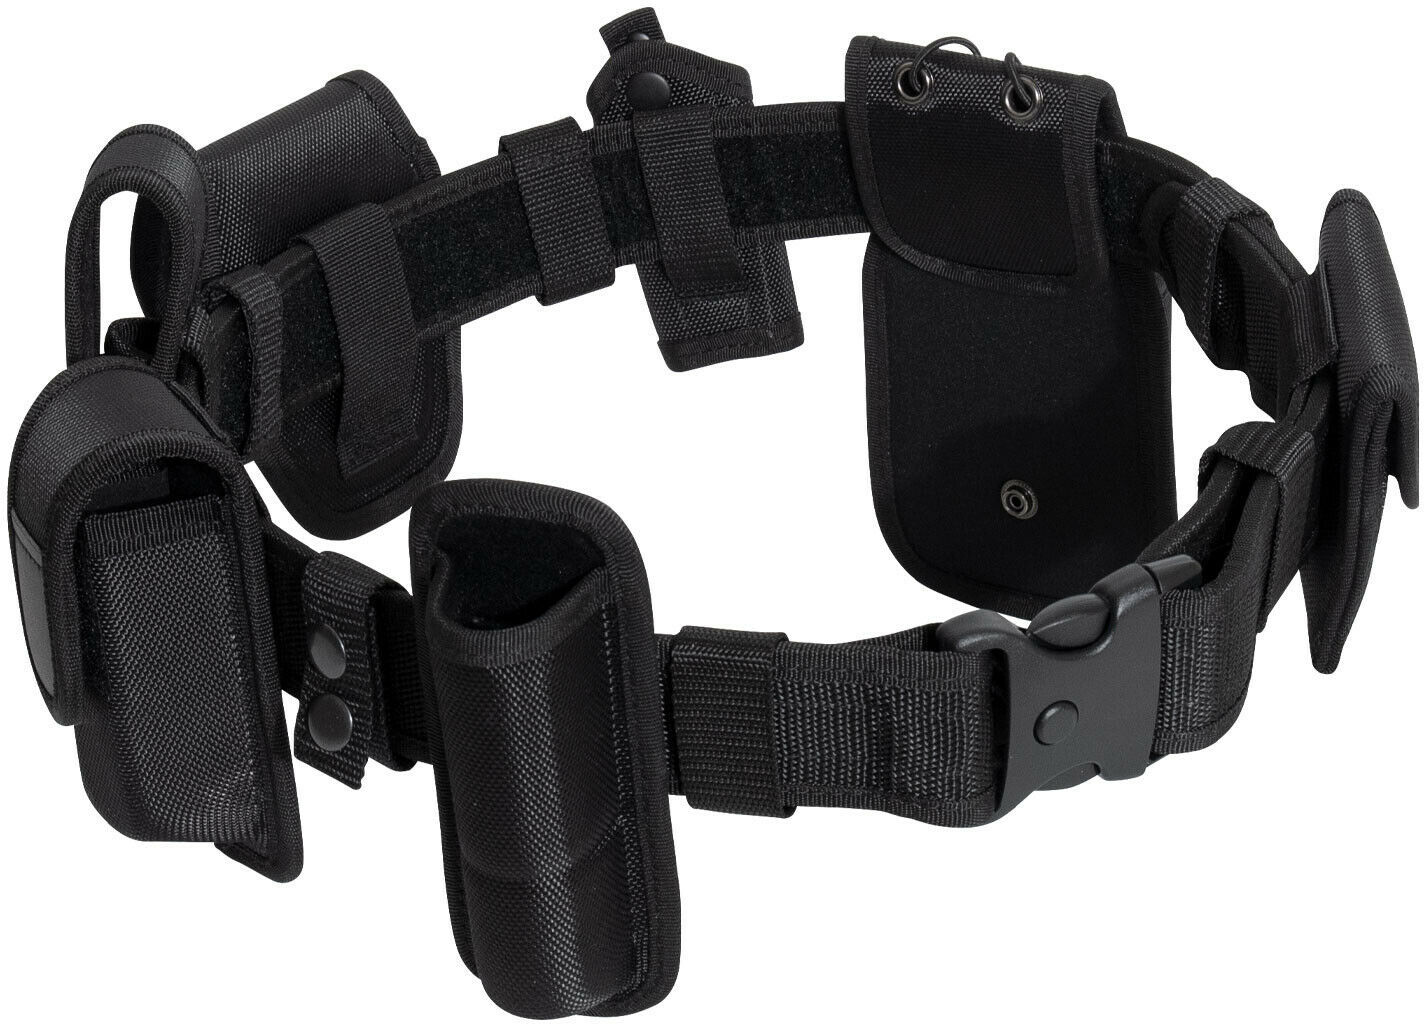 police duty belt